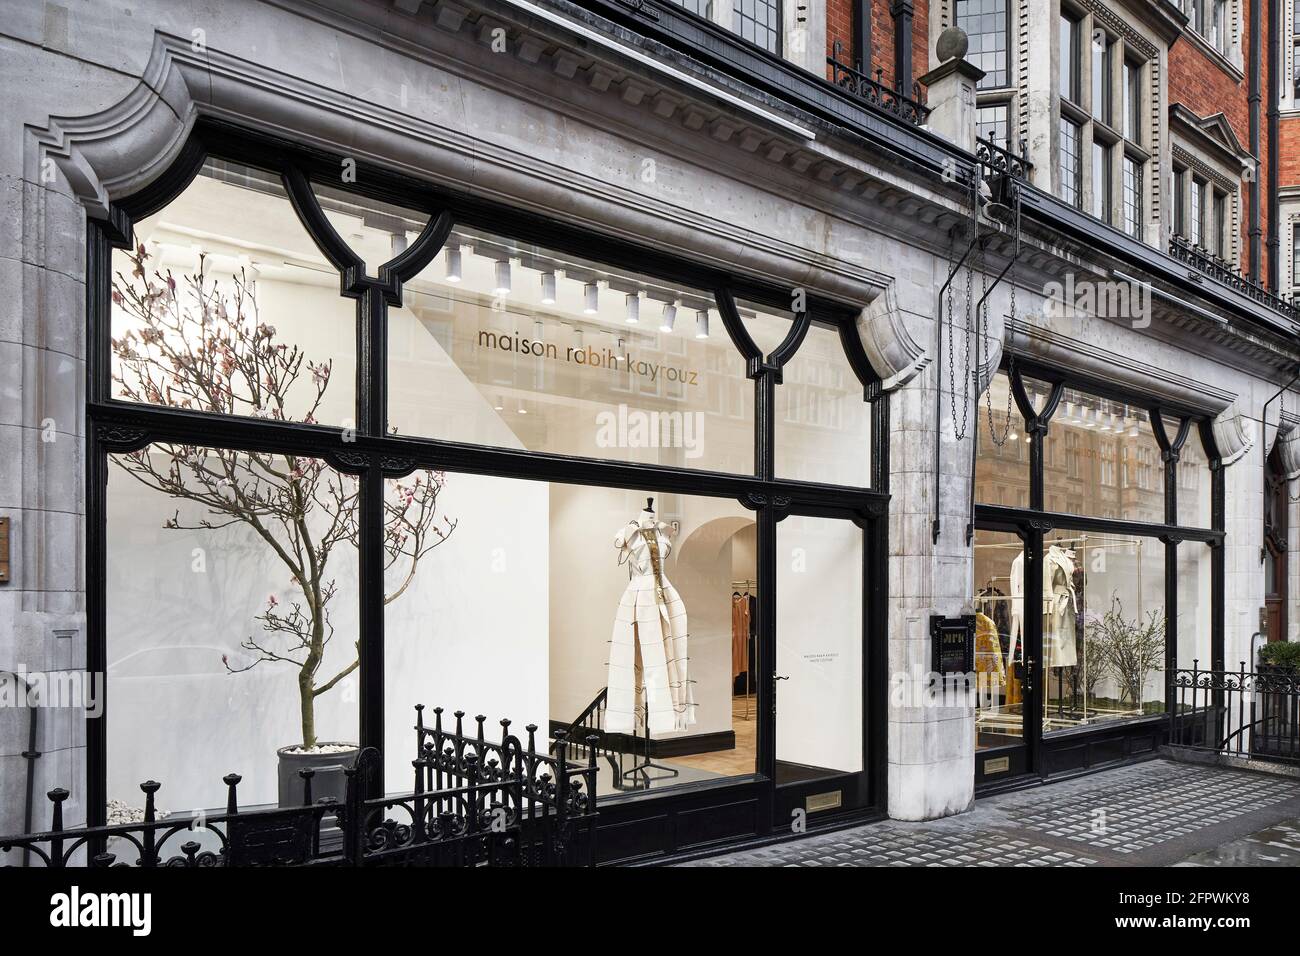 Avant du magasin. Maison Rabih Kayrouz Boutique, Londres, Royaume-Uni. Architecte: n/a, 2020. Banque D'Images